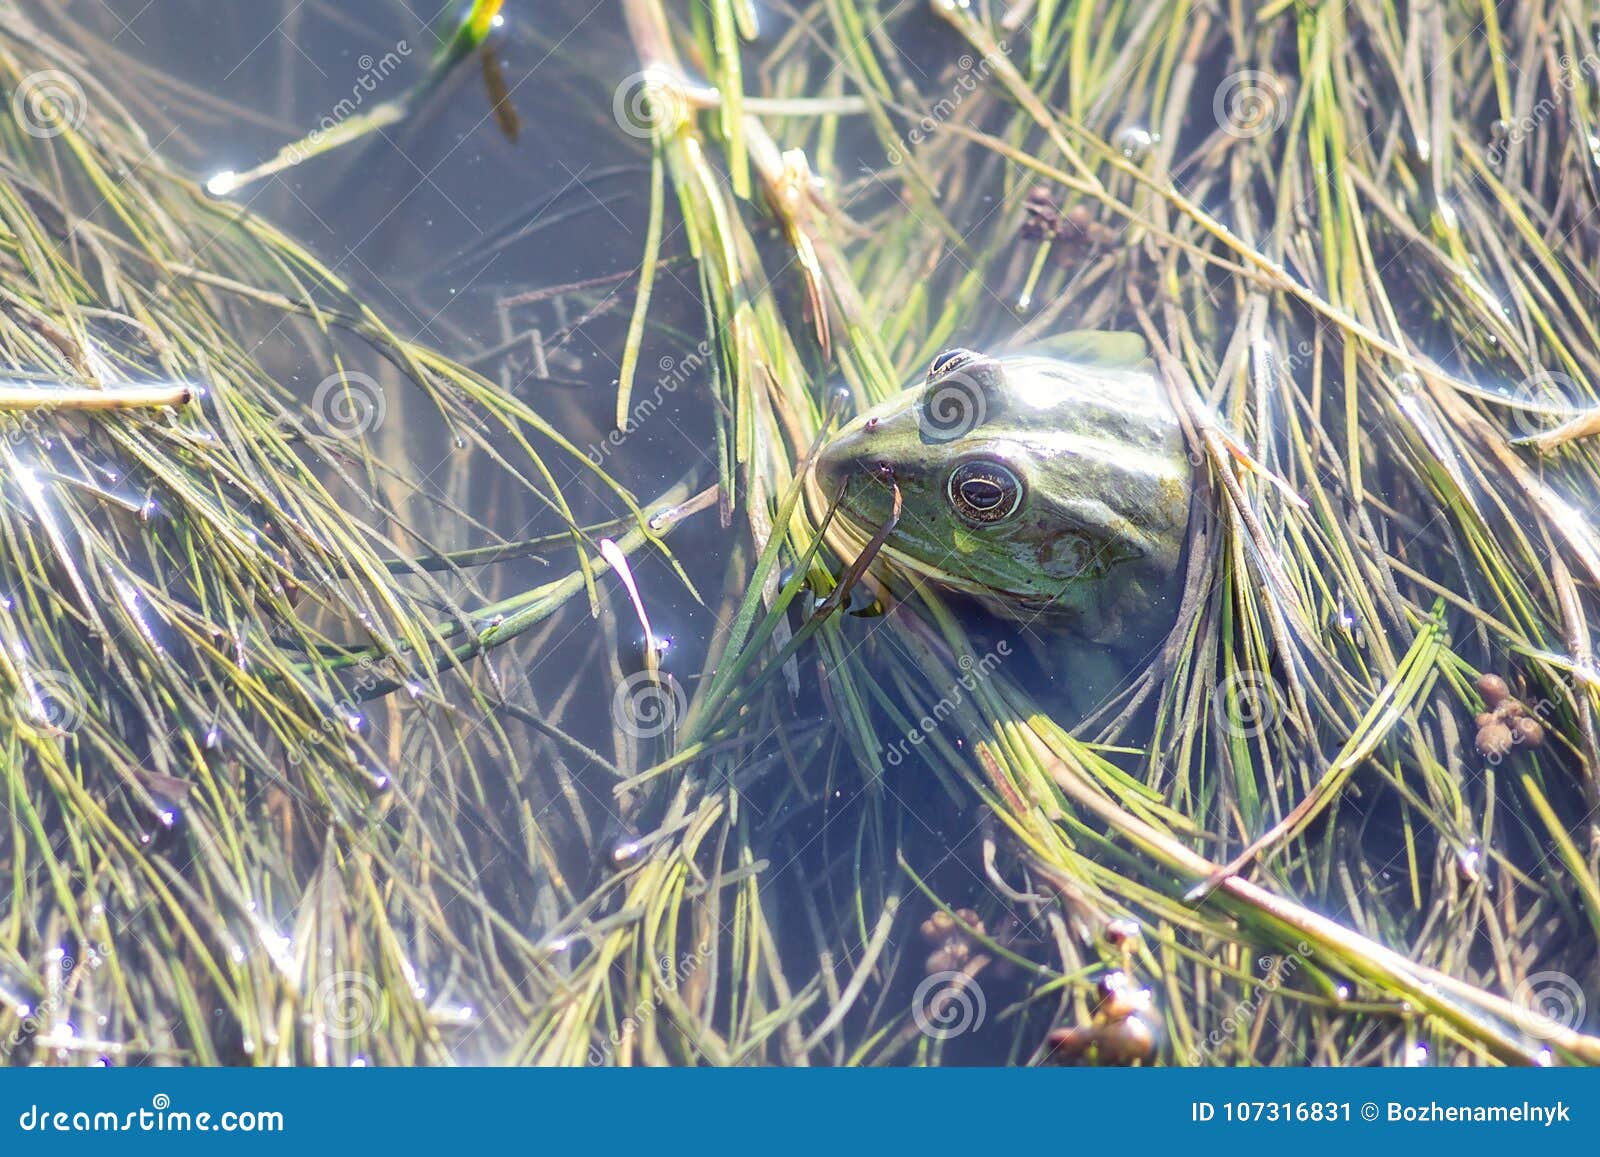 Marsh Frog in Pond Full of Weeds. Green Frog Pelophylax Esculentus ...